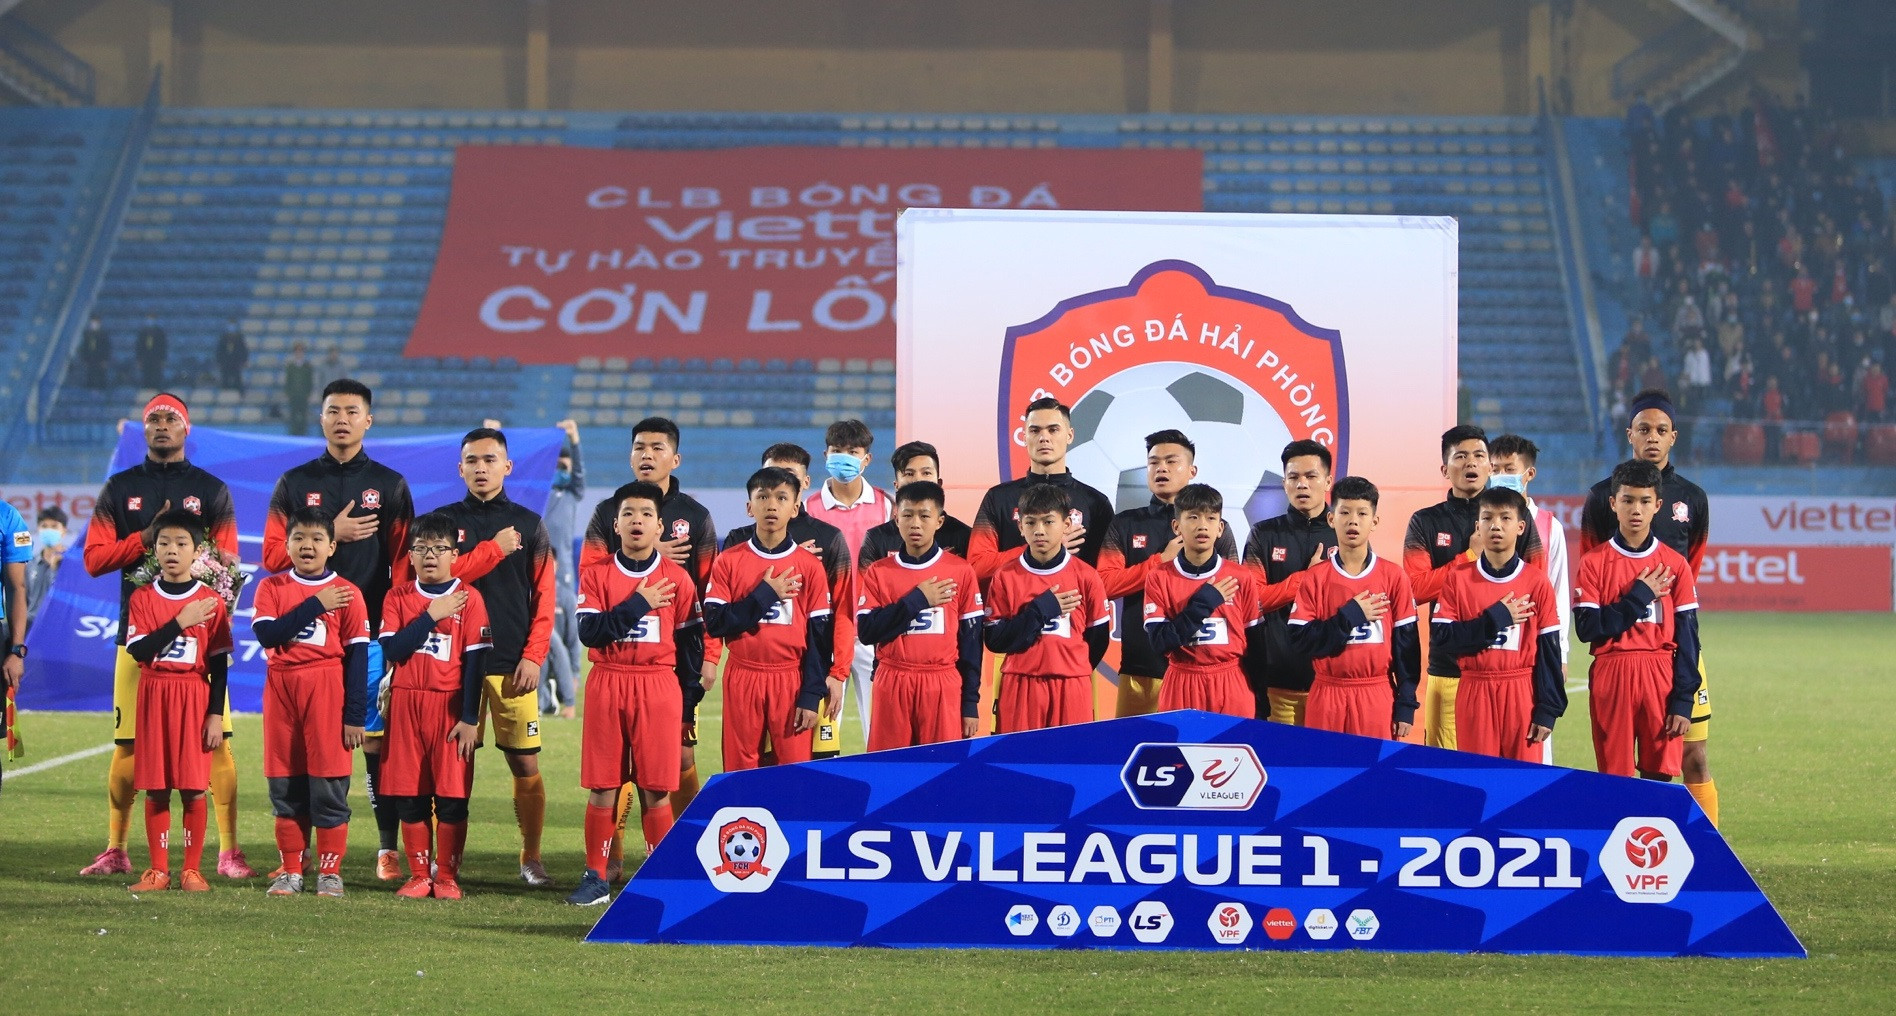 CLB Hải Phòng là một hiện tượng thú vị của V.League 2021 khi đánh bại CLB Viettel và vượt qua CLB Nam Định để dẫn đầu bảng xếp hạng V.League 2021. Đáng nói, mùa trước đội bóng đất cảng còn phải chật vật trụ hạng. Ảnh: VPF